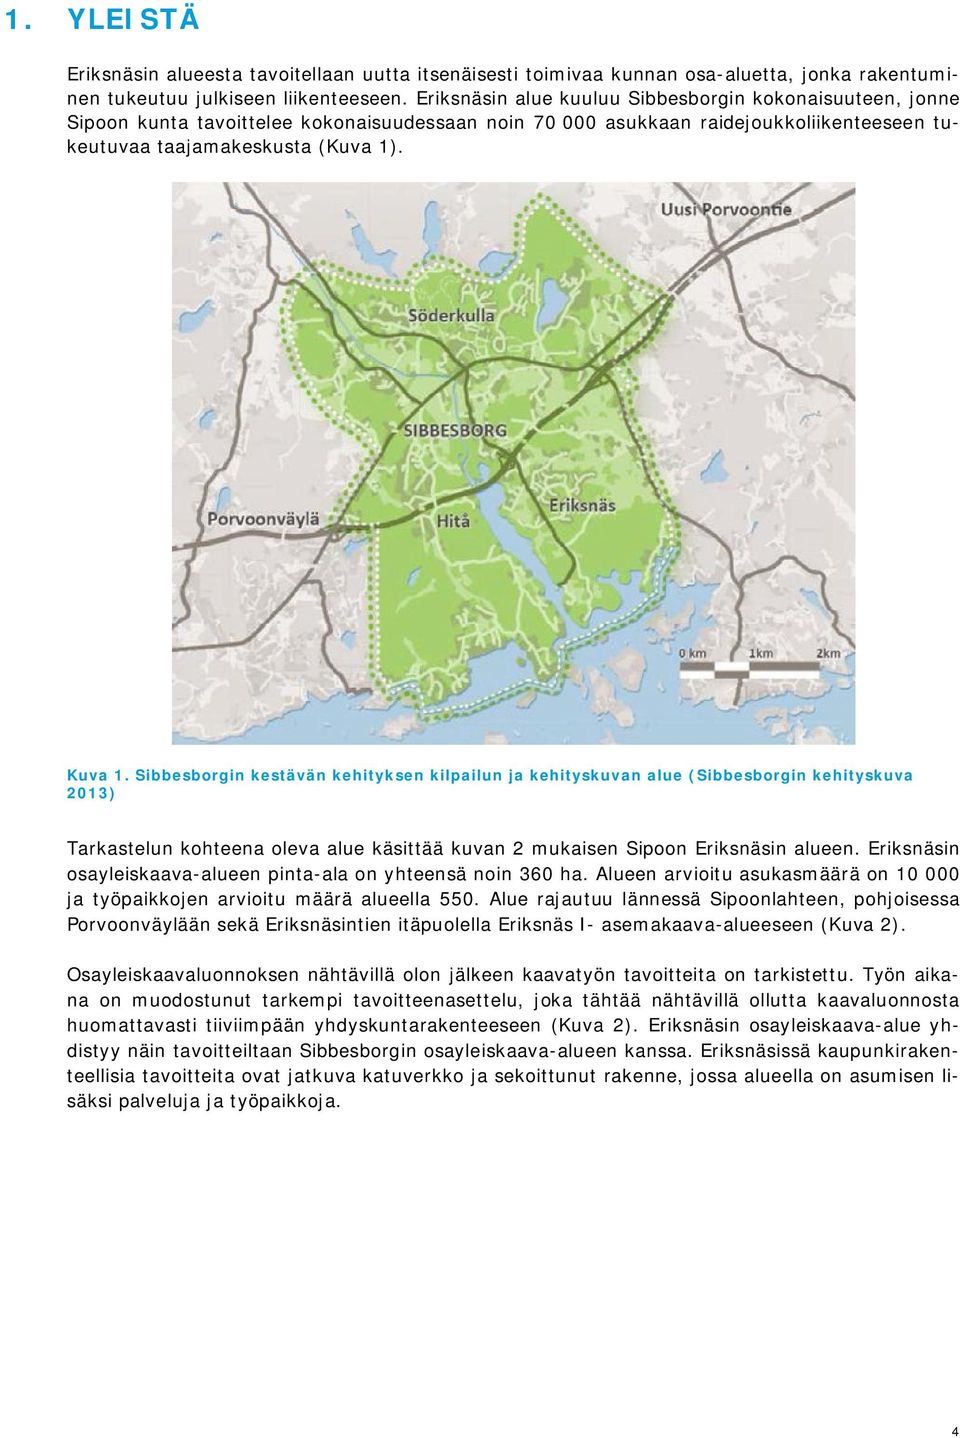 Sibbesborgin kestävän kehityksen kilpailun ja kehityskuvan alue (Sibbesborgin kehityskuva 2013) Tarkastelun kohteena oleva alue käsittää kuvan 2 mukaisen Sipoon Eriksnäsin alueen.